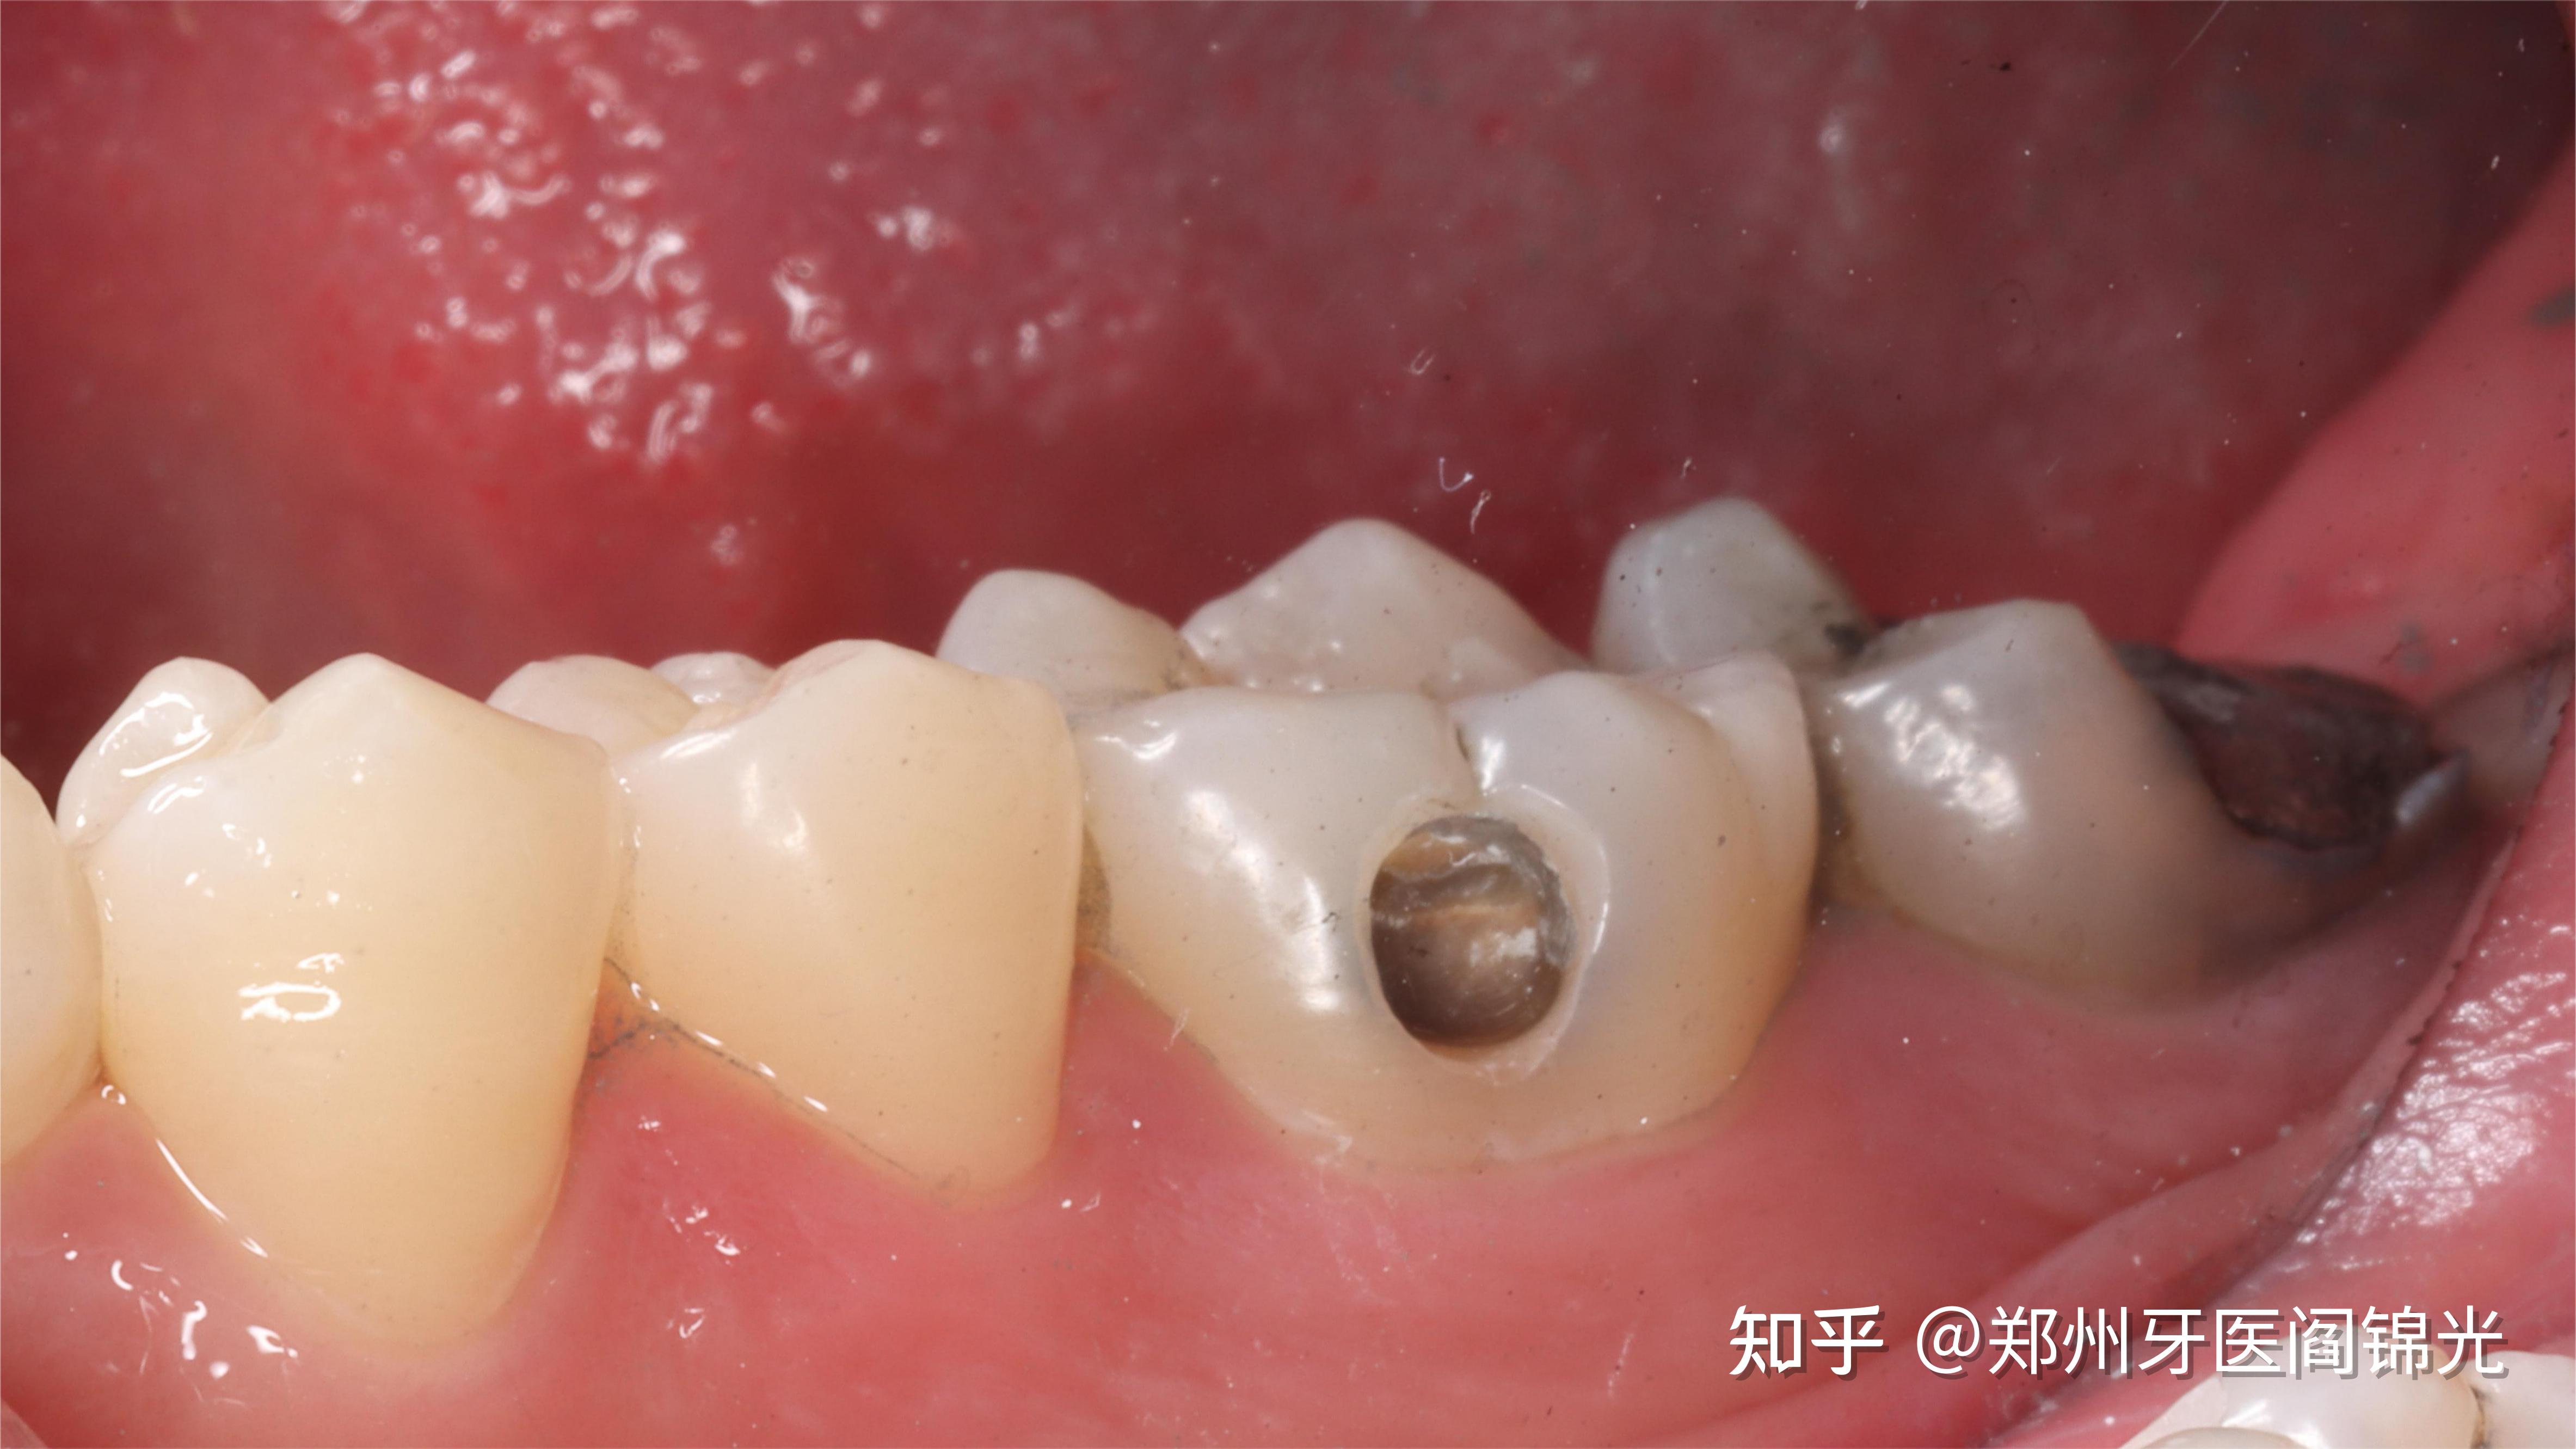 左下36牙,6年前用银汞合金补牙,现在窝洞边缘有墨浸状改变